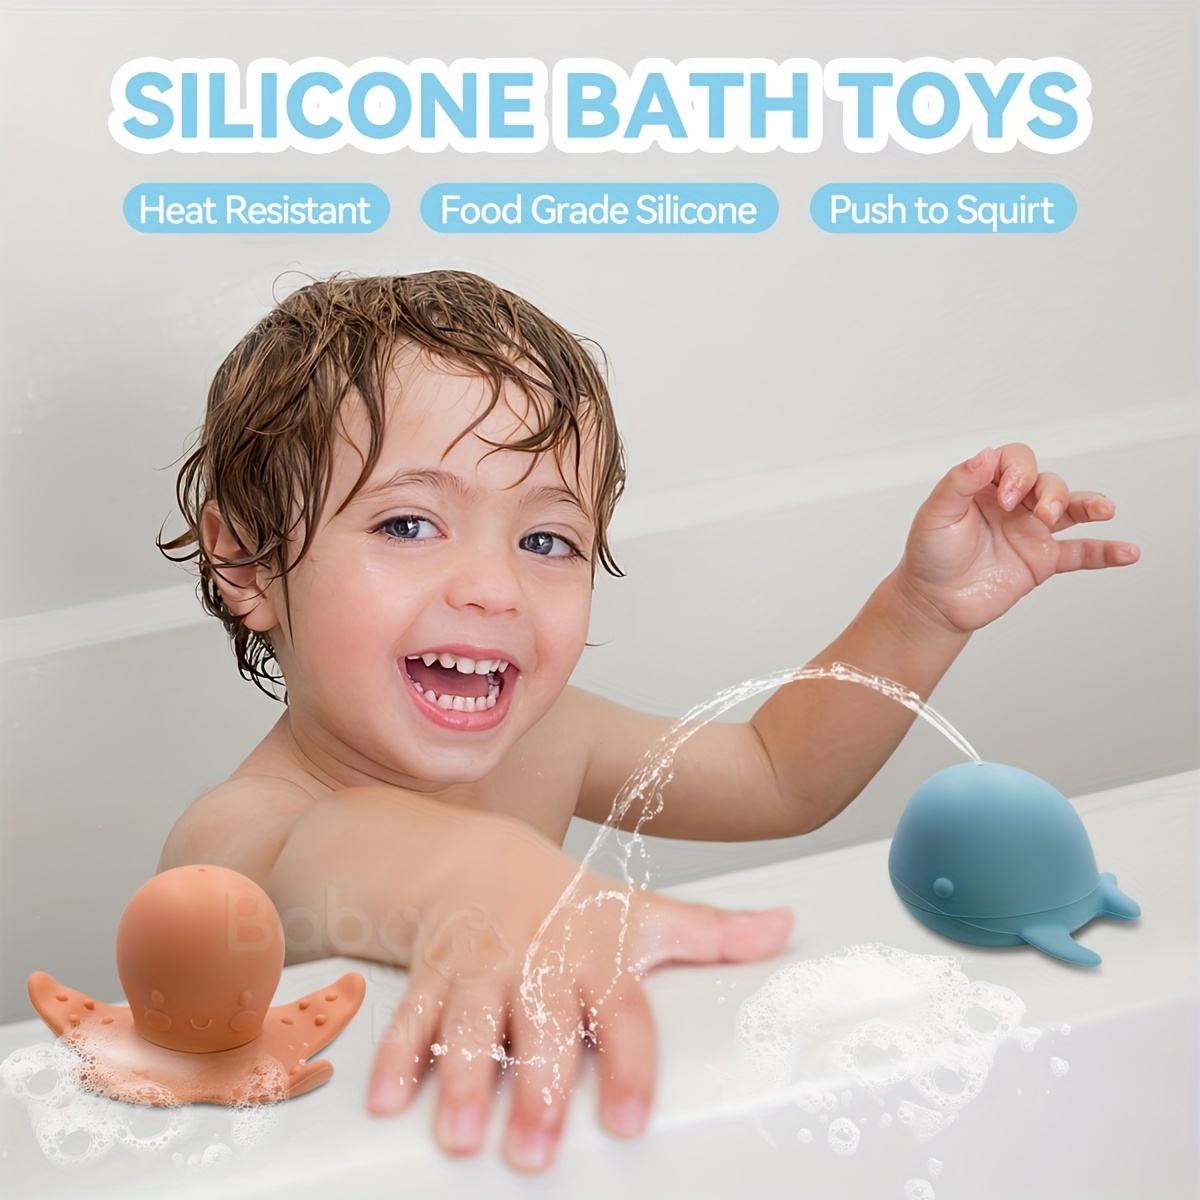 Whale And Dolphin Bath Mat For Tub For Kids Non slip Bath - Temu